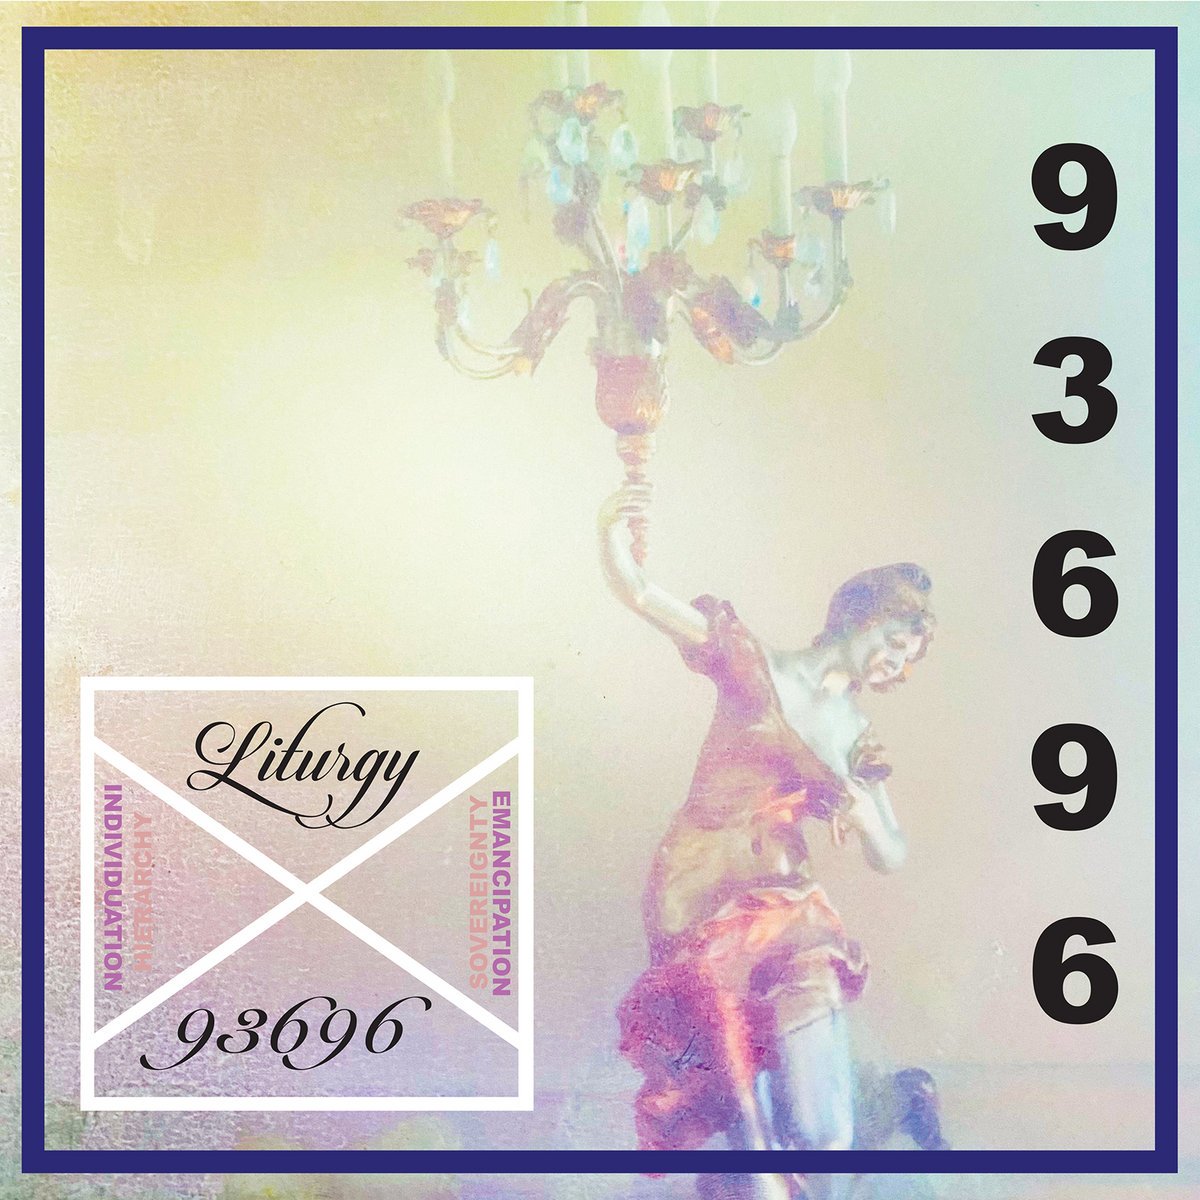 Liturgy "93696" [Indie Exclusive "Crystal Clear" Vinyl]